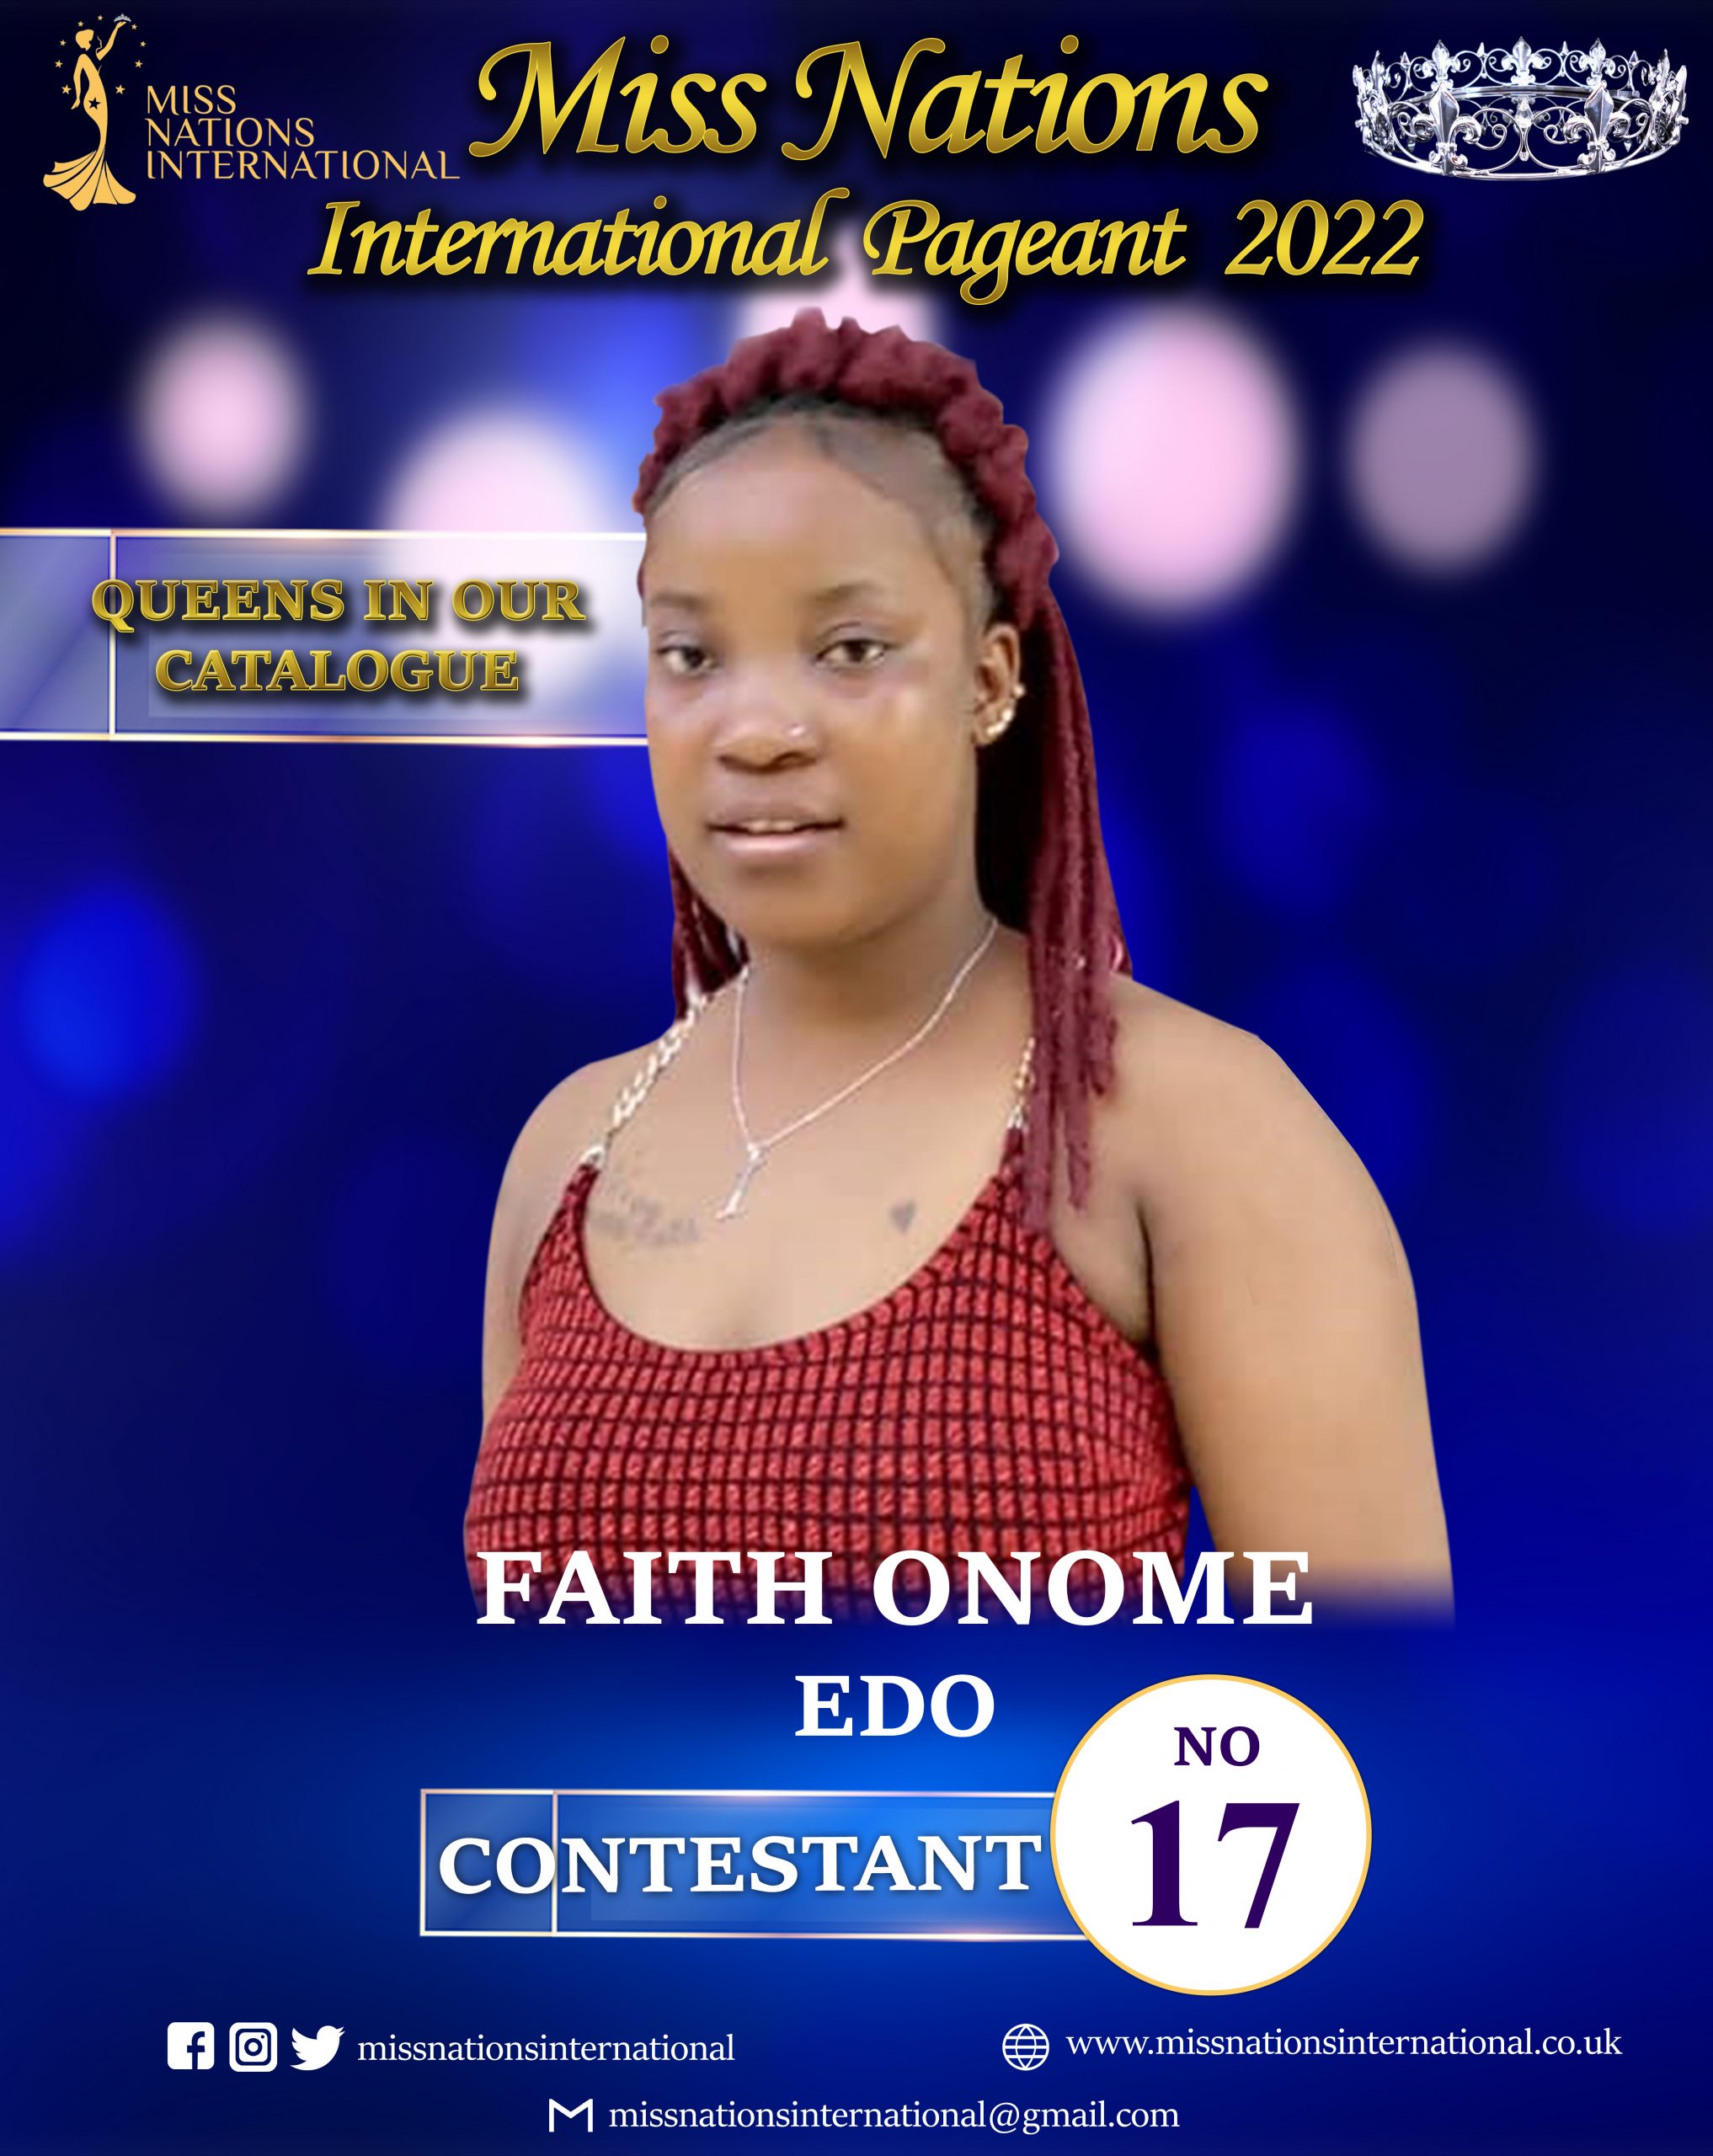 Faith Onome